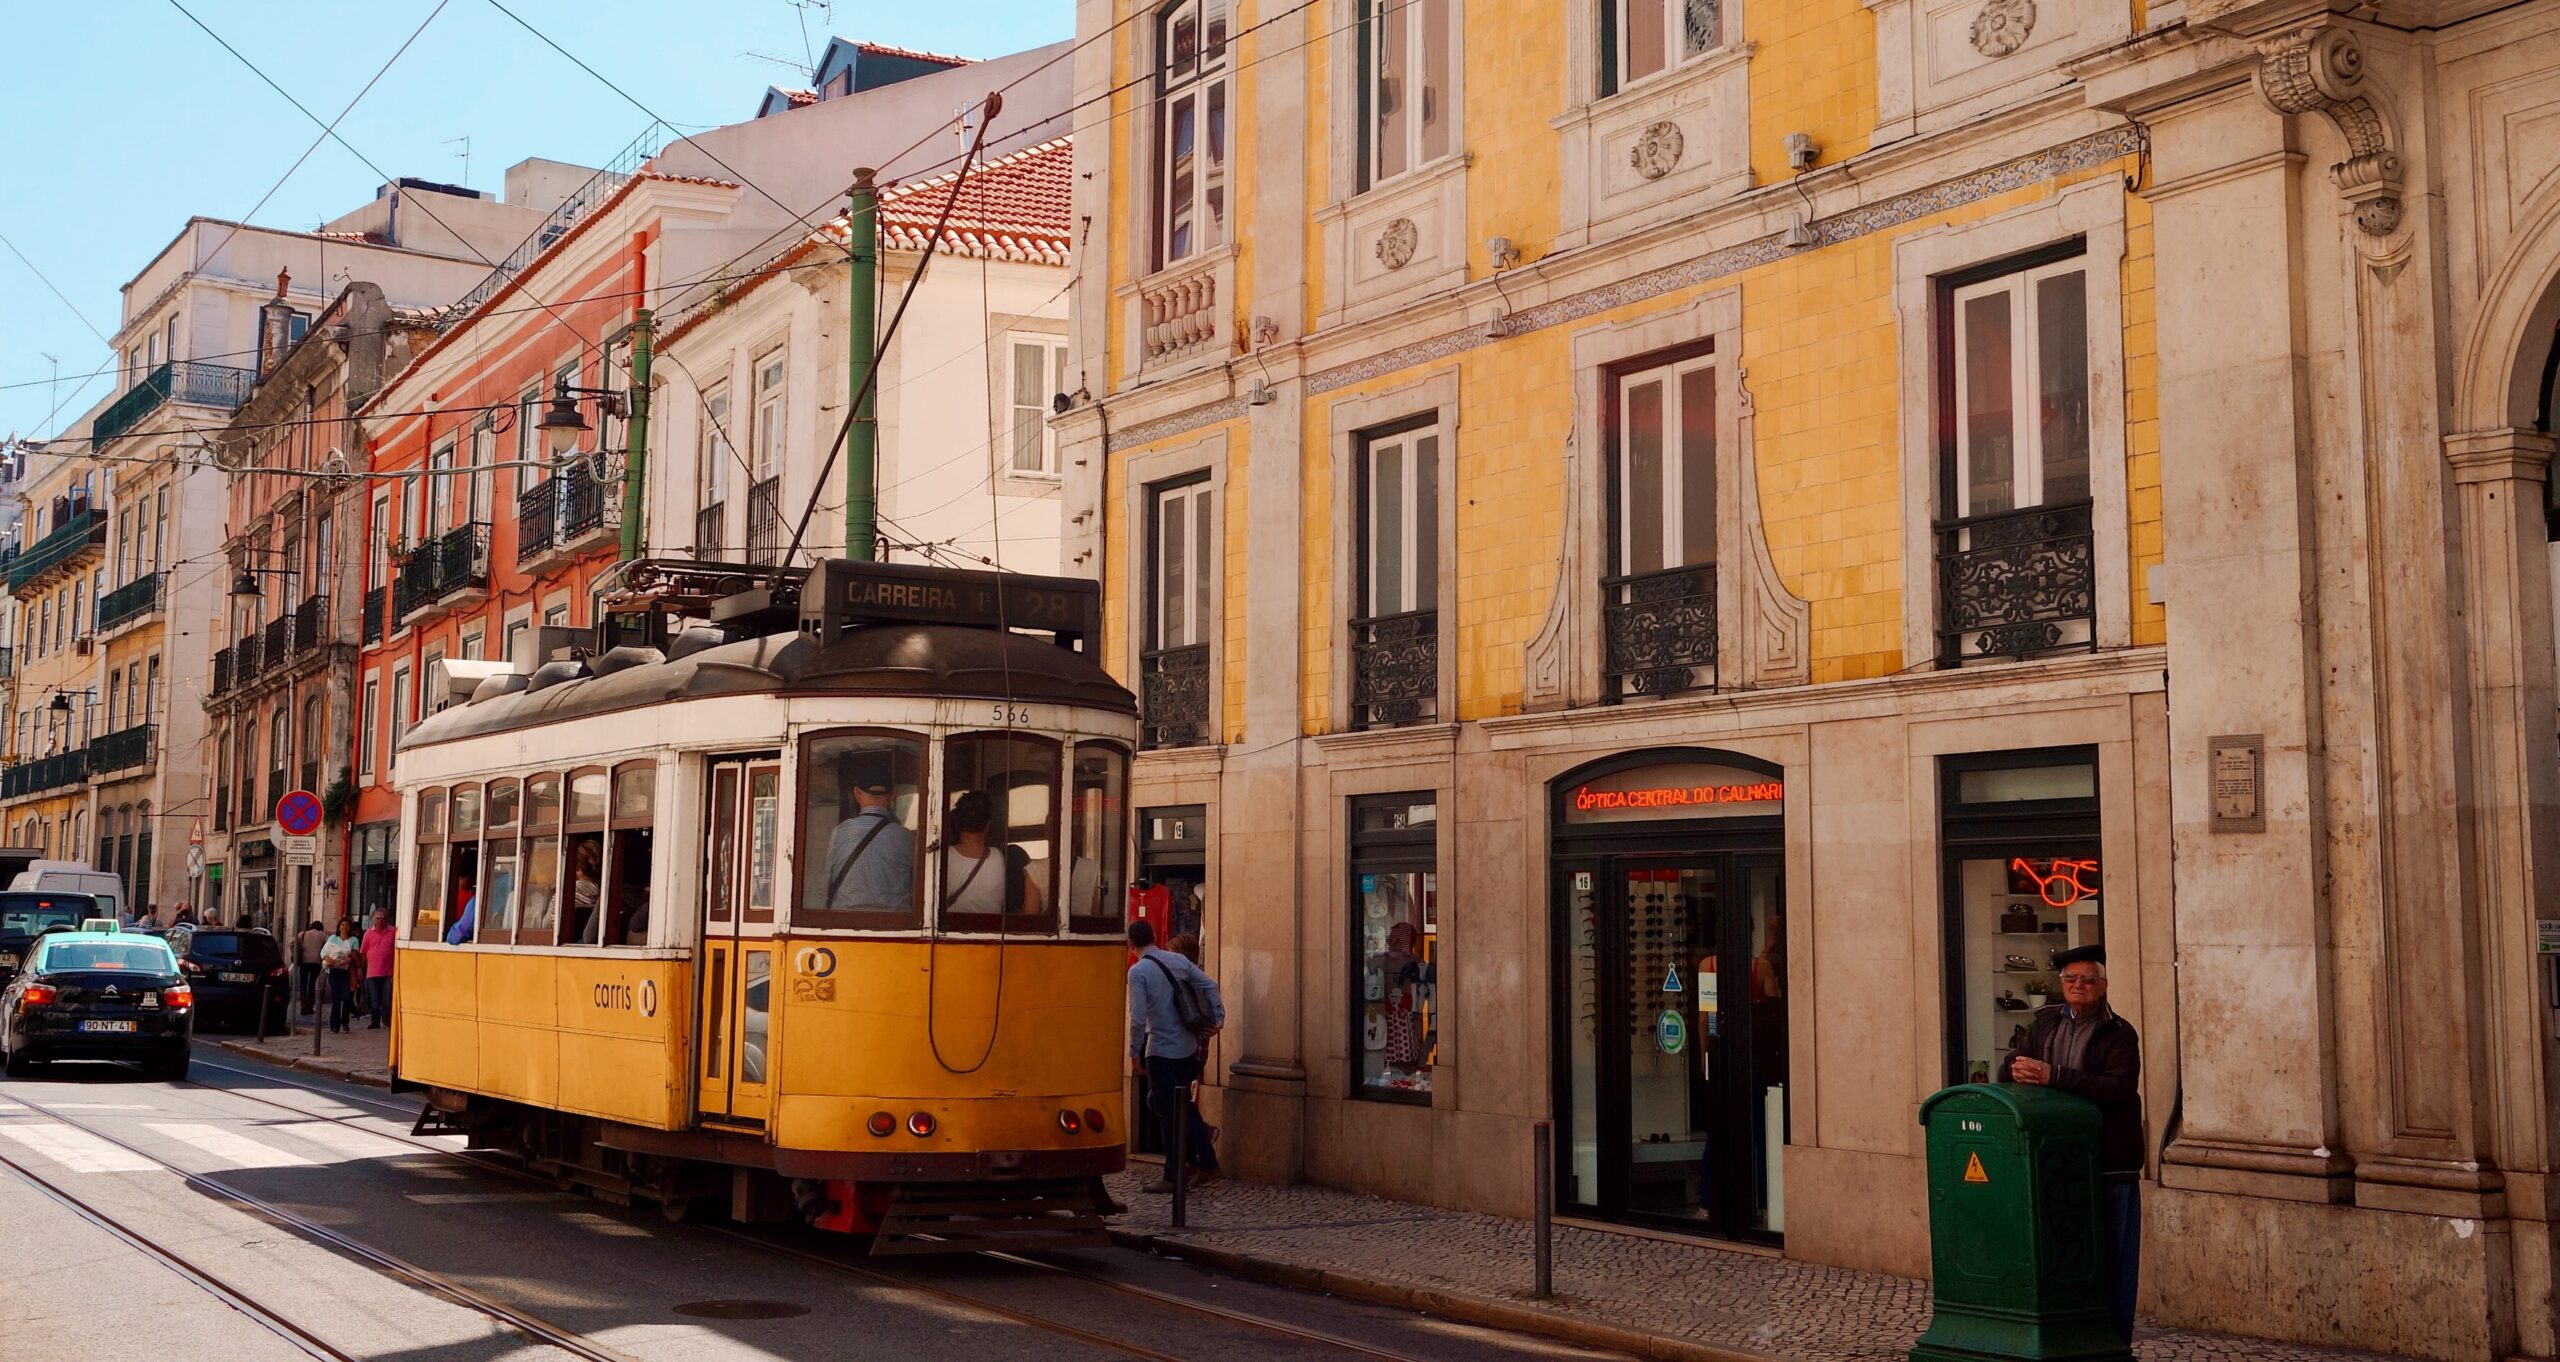 Lissabon Hotspot Guide